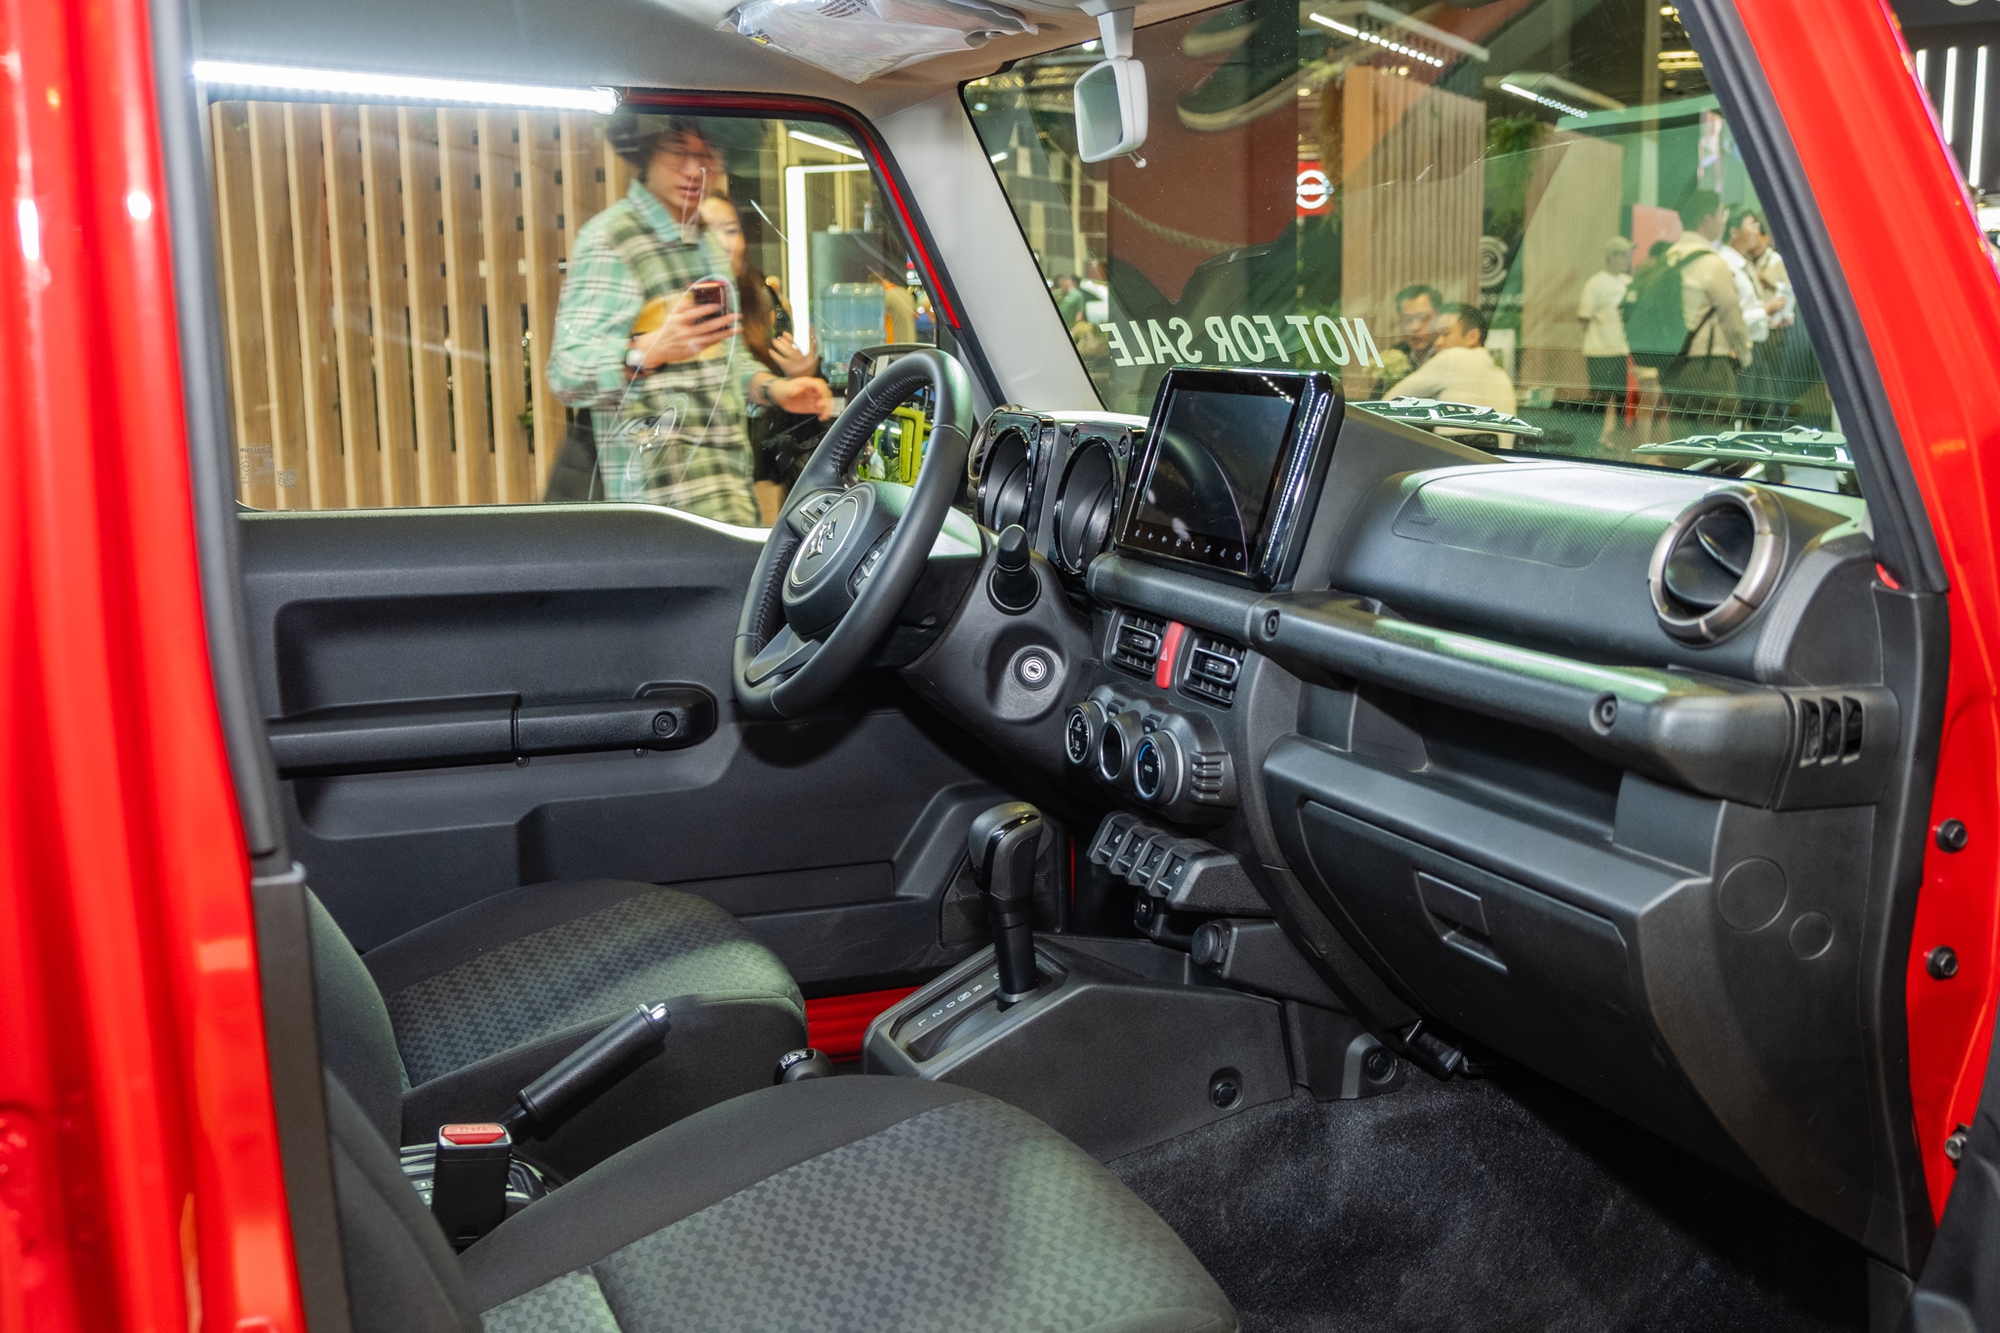 Xem thử Suzuki Jimny 5 cửa sắp bán tại ĐNÁ: Thực dụng hơn, không rẻ nhưng vẫn đáng chờ ngày về Việt Nam